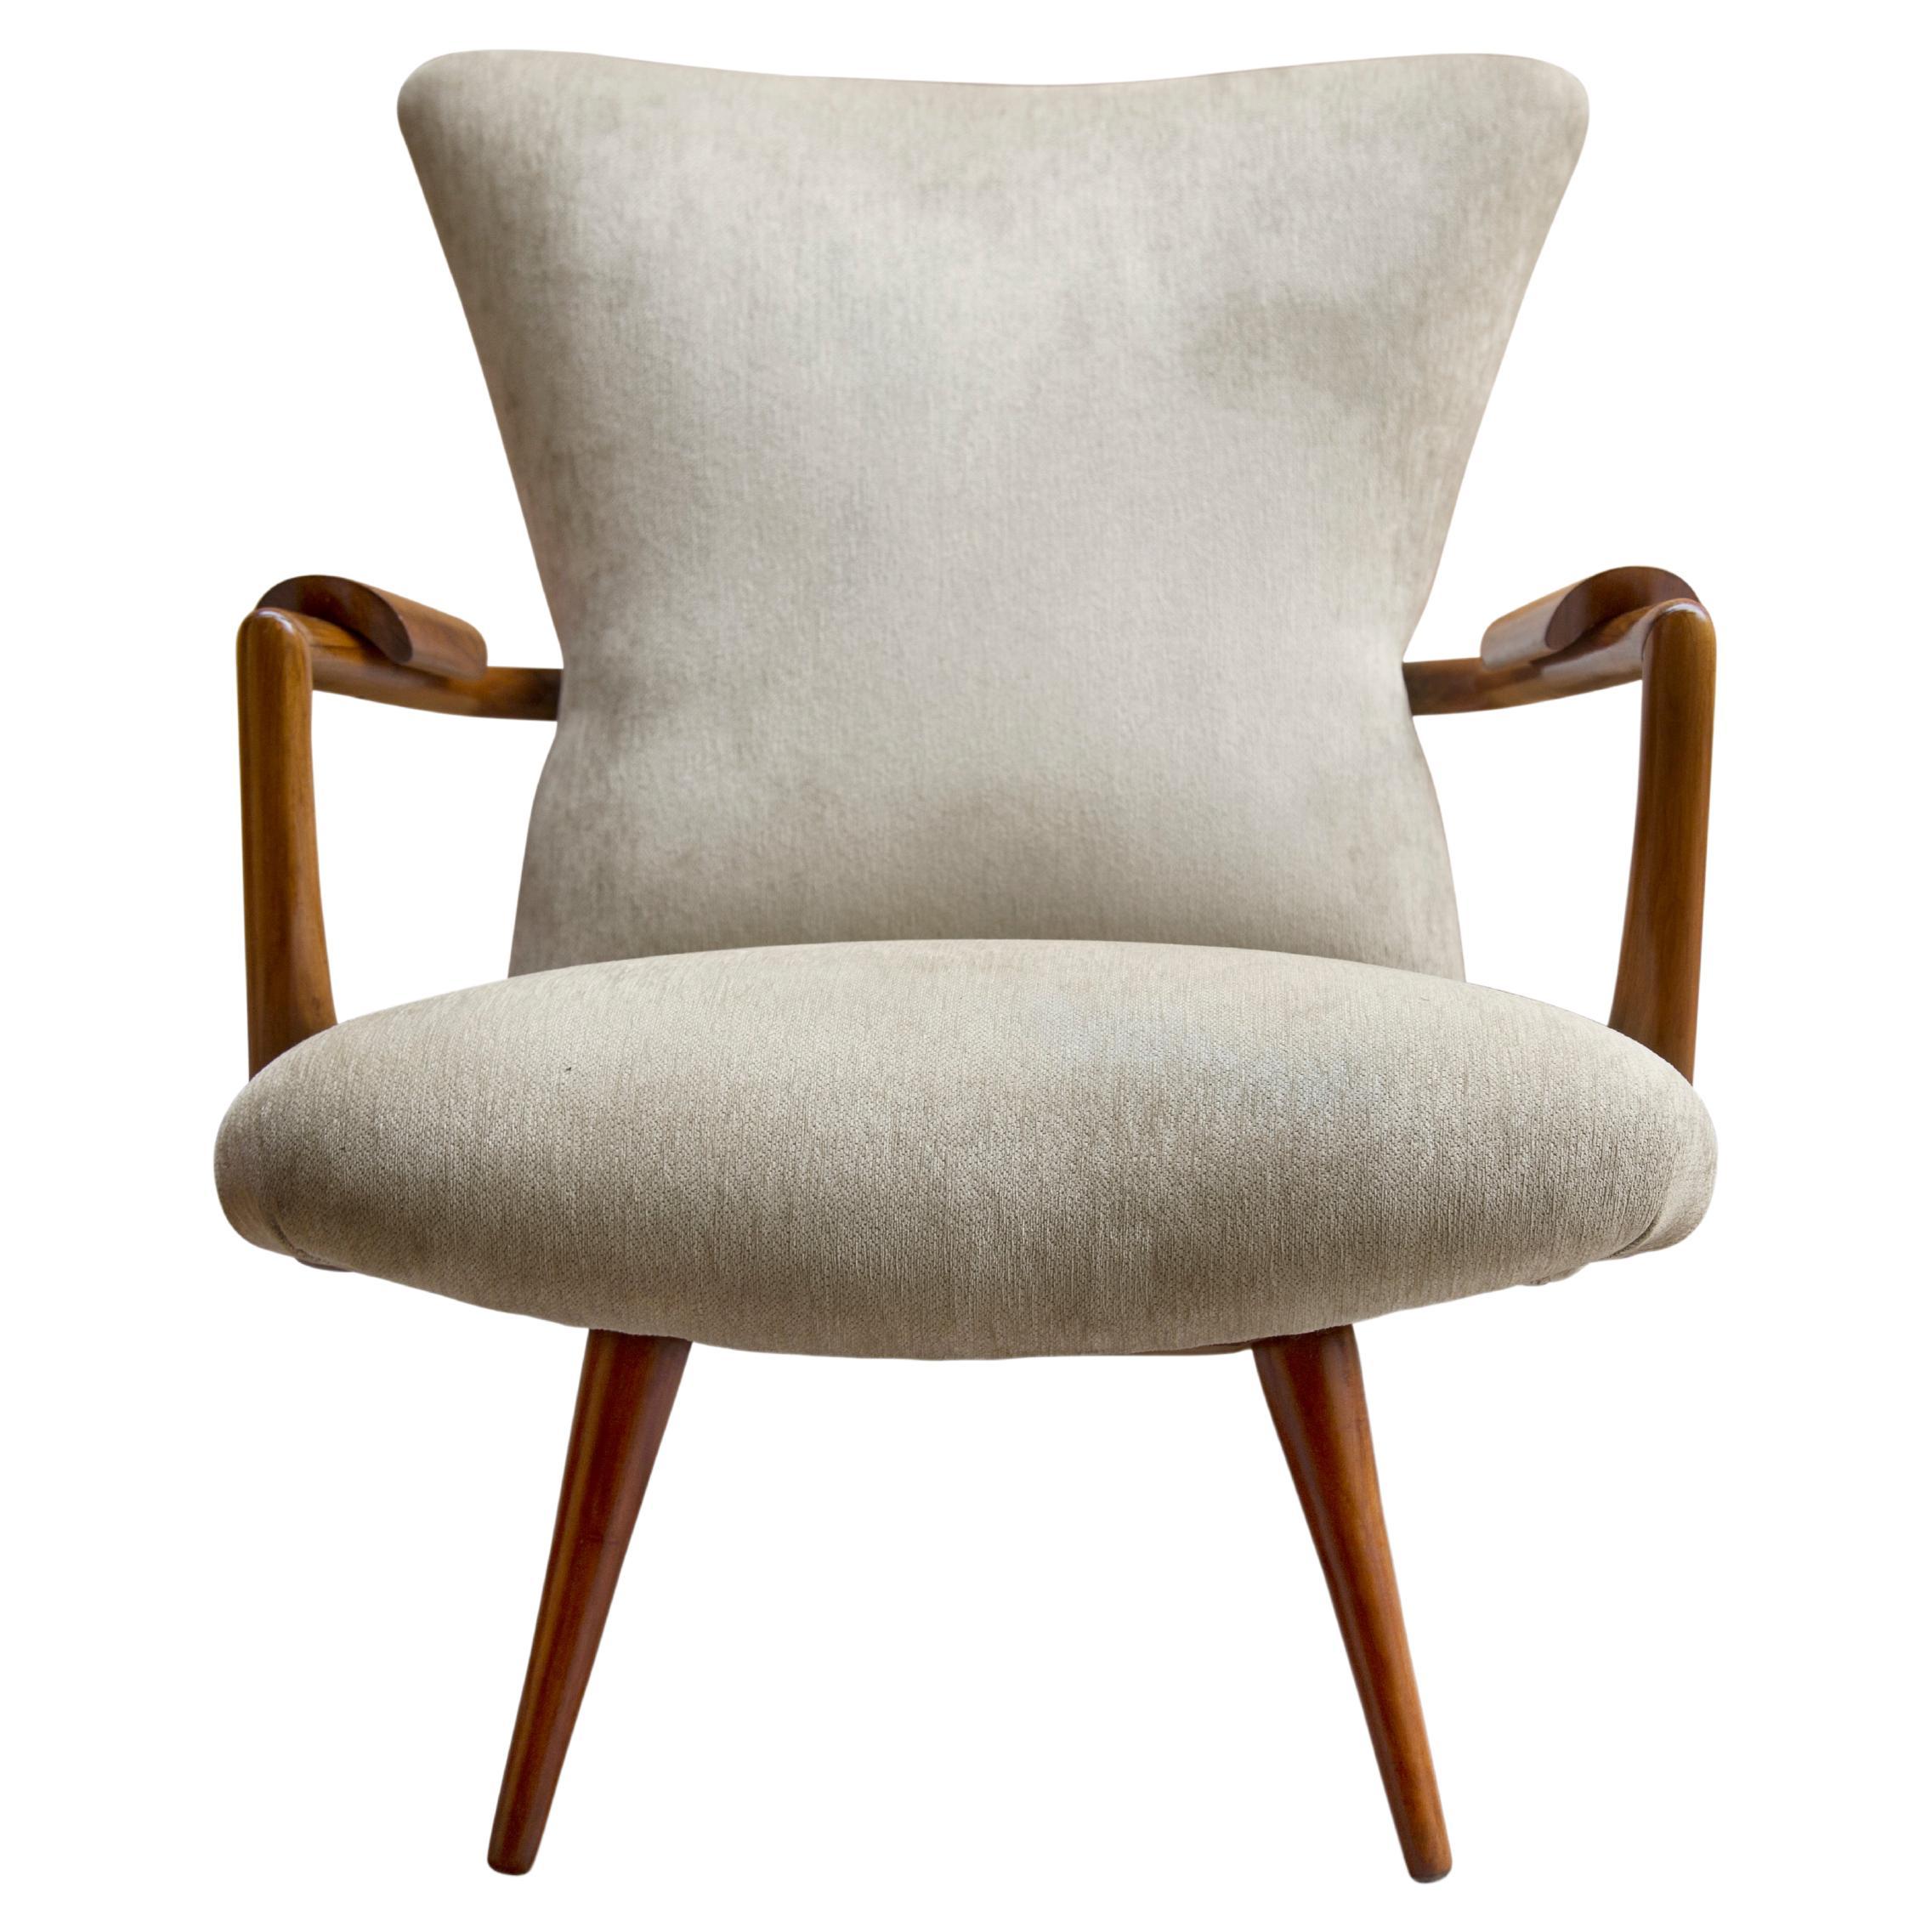 Disponible aujourd'hui, ce fauteuil moderne du milieu du siècle de Giuseppe Scapinelli est absolument magnifique ! Le fauteuil présente une structure en bois de caviuna avec des accoudoirs incurvés, des pieds en cure-dents et un tissu beige. De